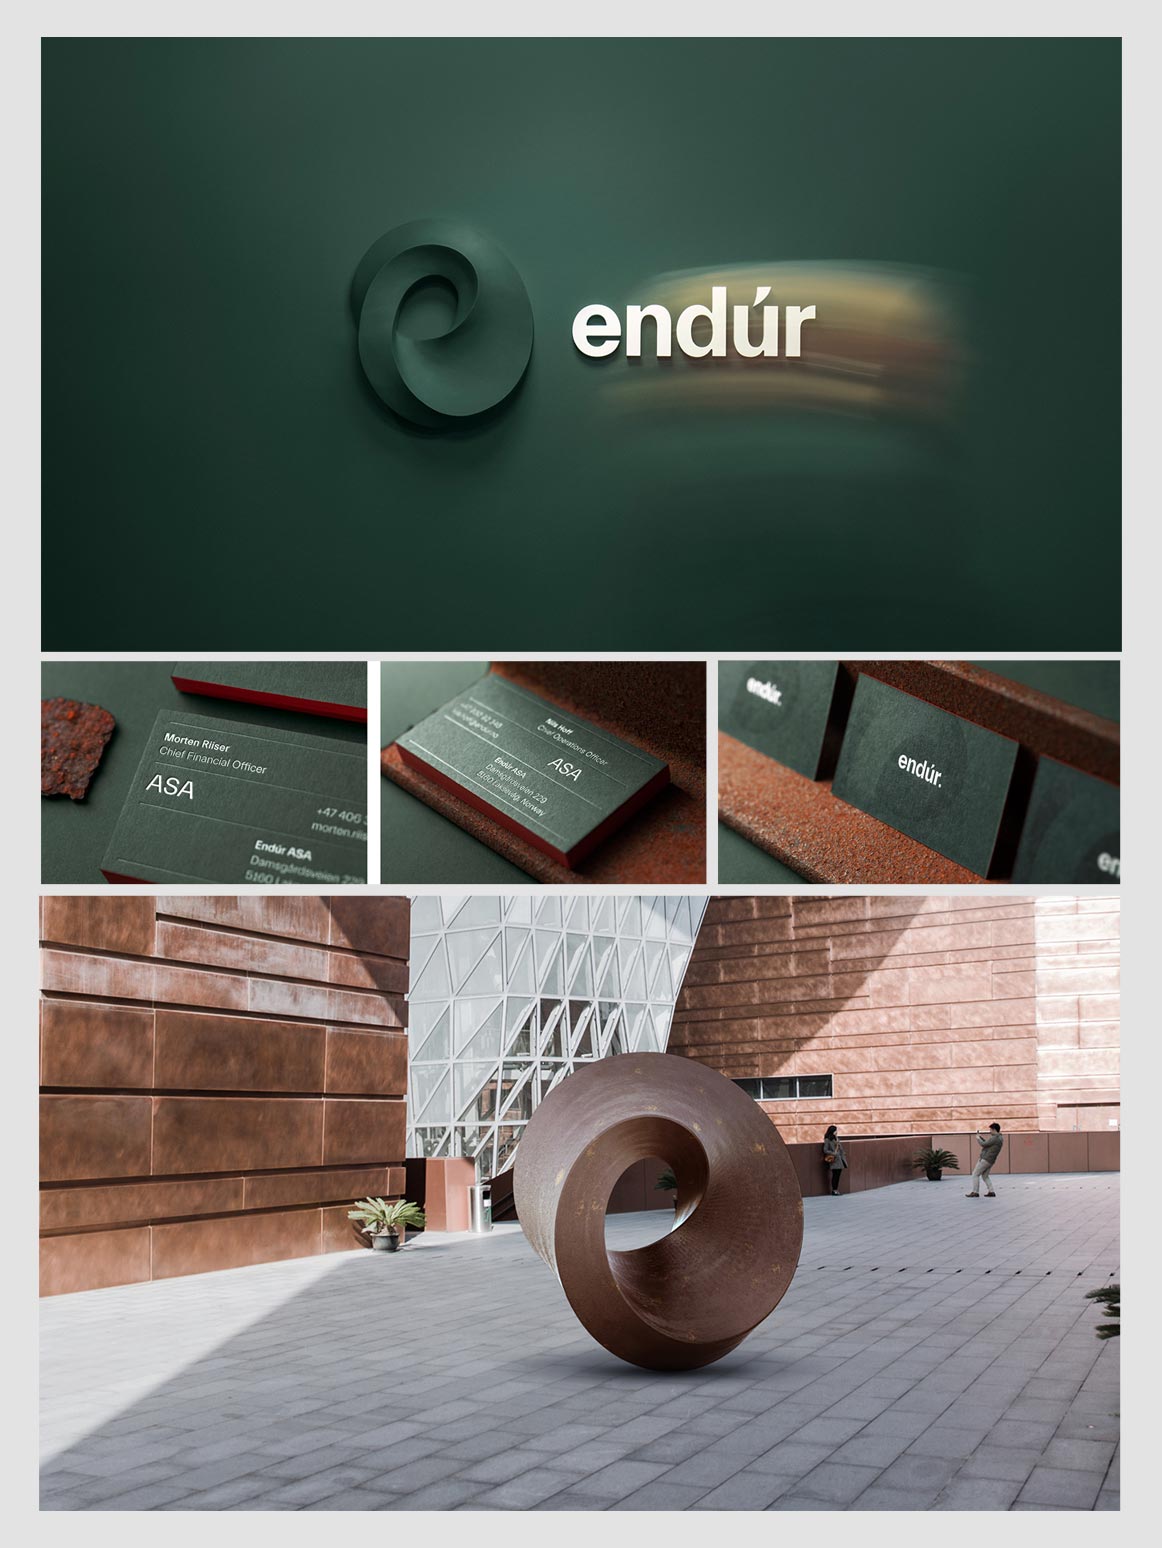 Identyfikacja wizualna marki Endur.